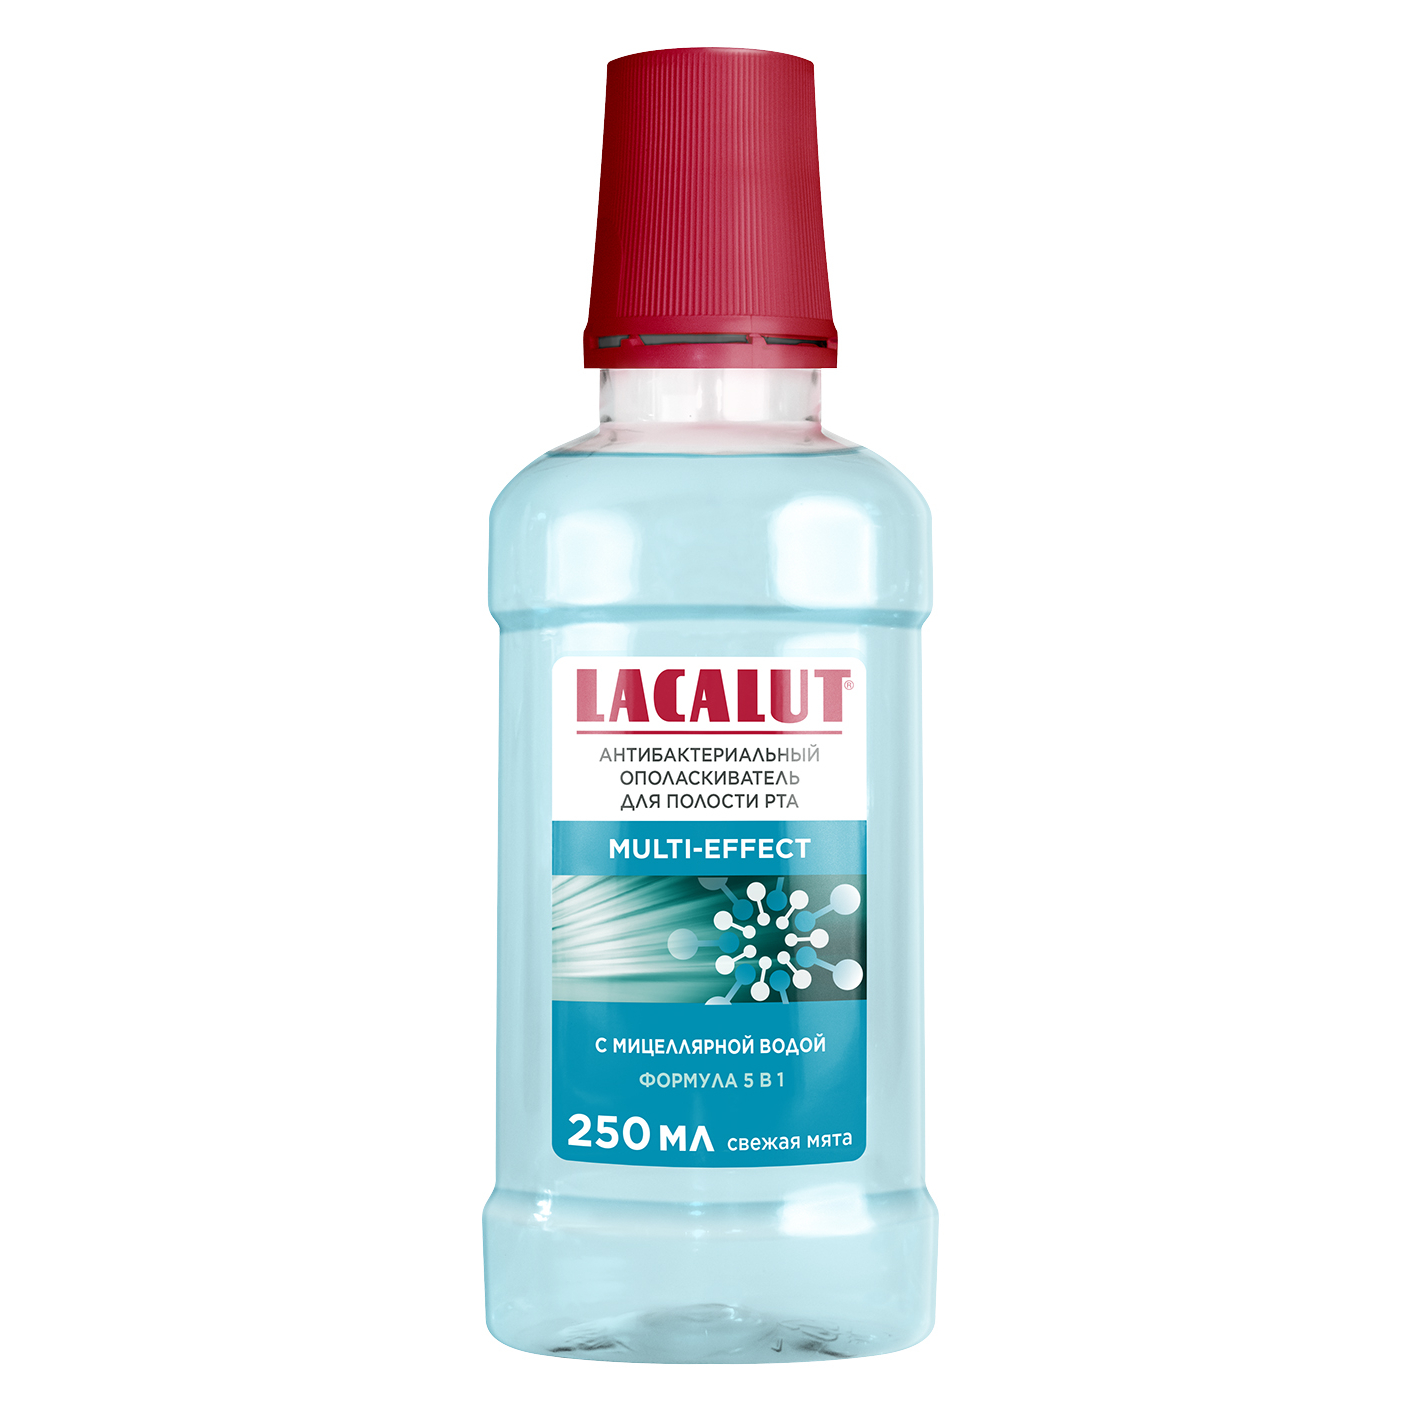 Ополаскиватель для полости рта Lacalut multi-effect антибактериальный 250 мл скребок для очищения полости рта